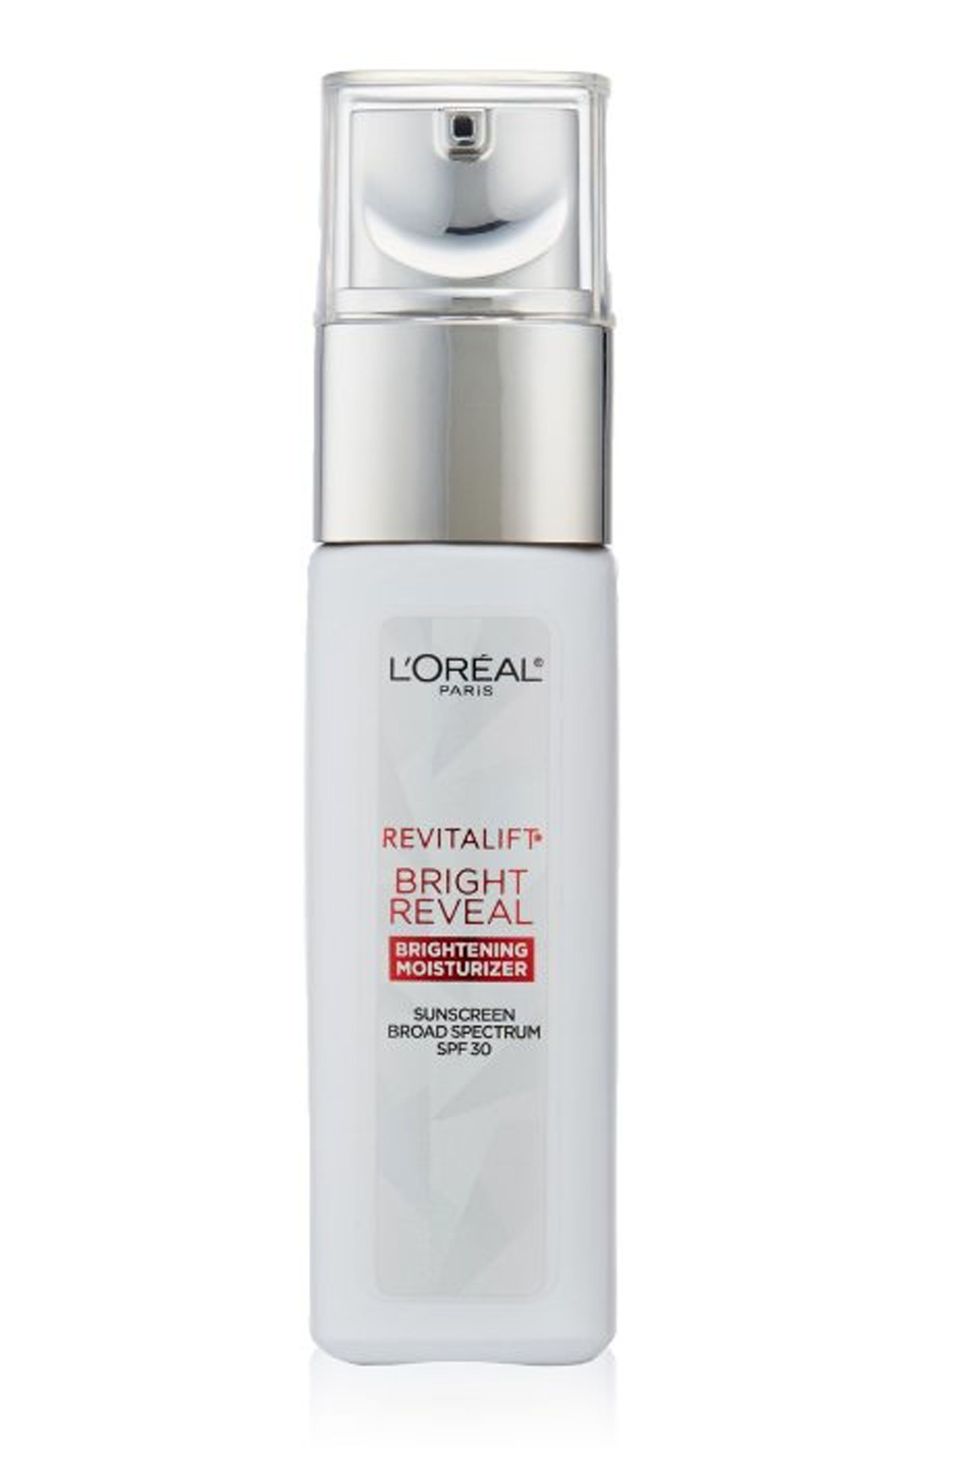 L’Oréal Paris Revitalift Bright Reveal Anti-Aging Day Cream SPF 30